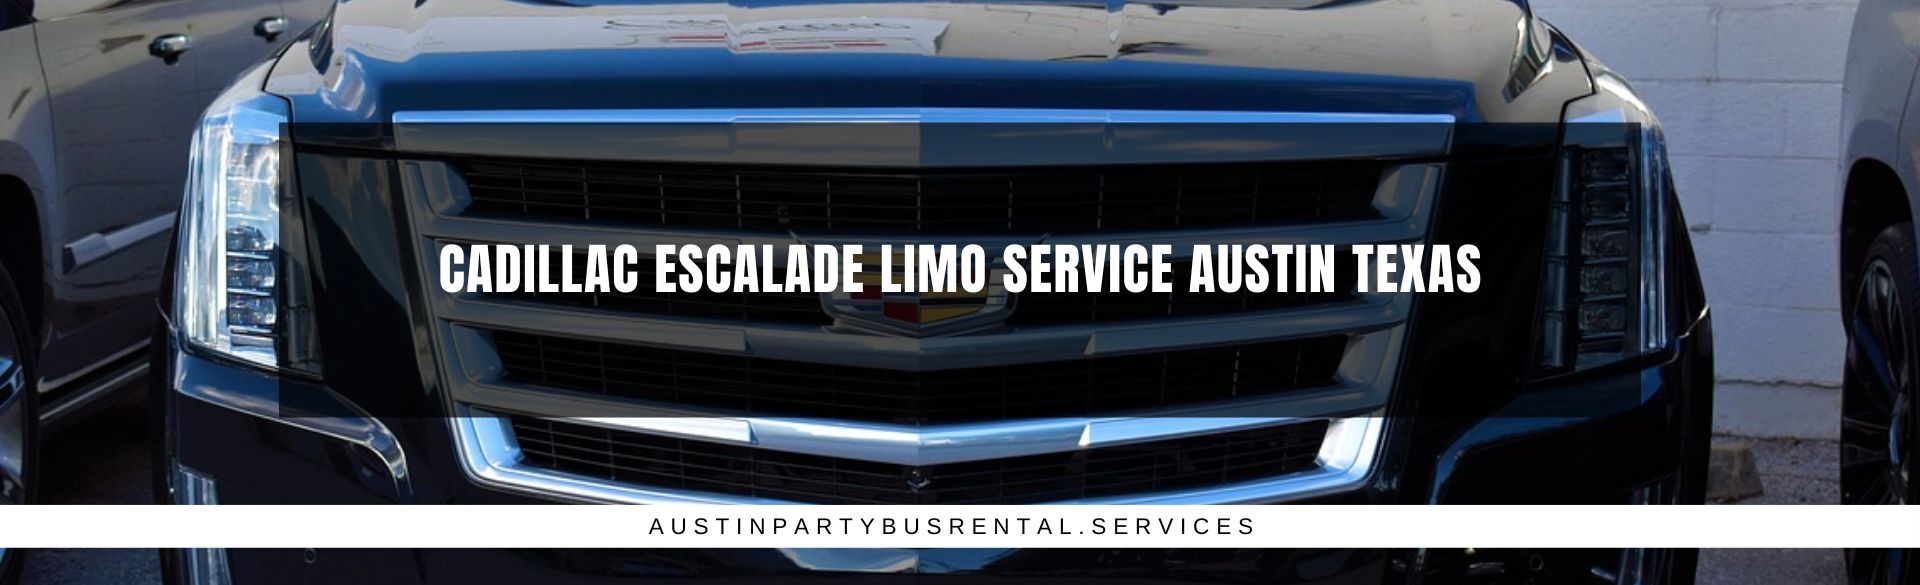 Cadillac Escalade Limo Service Austin Texas